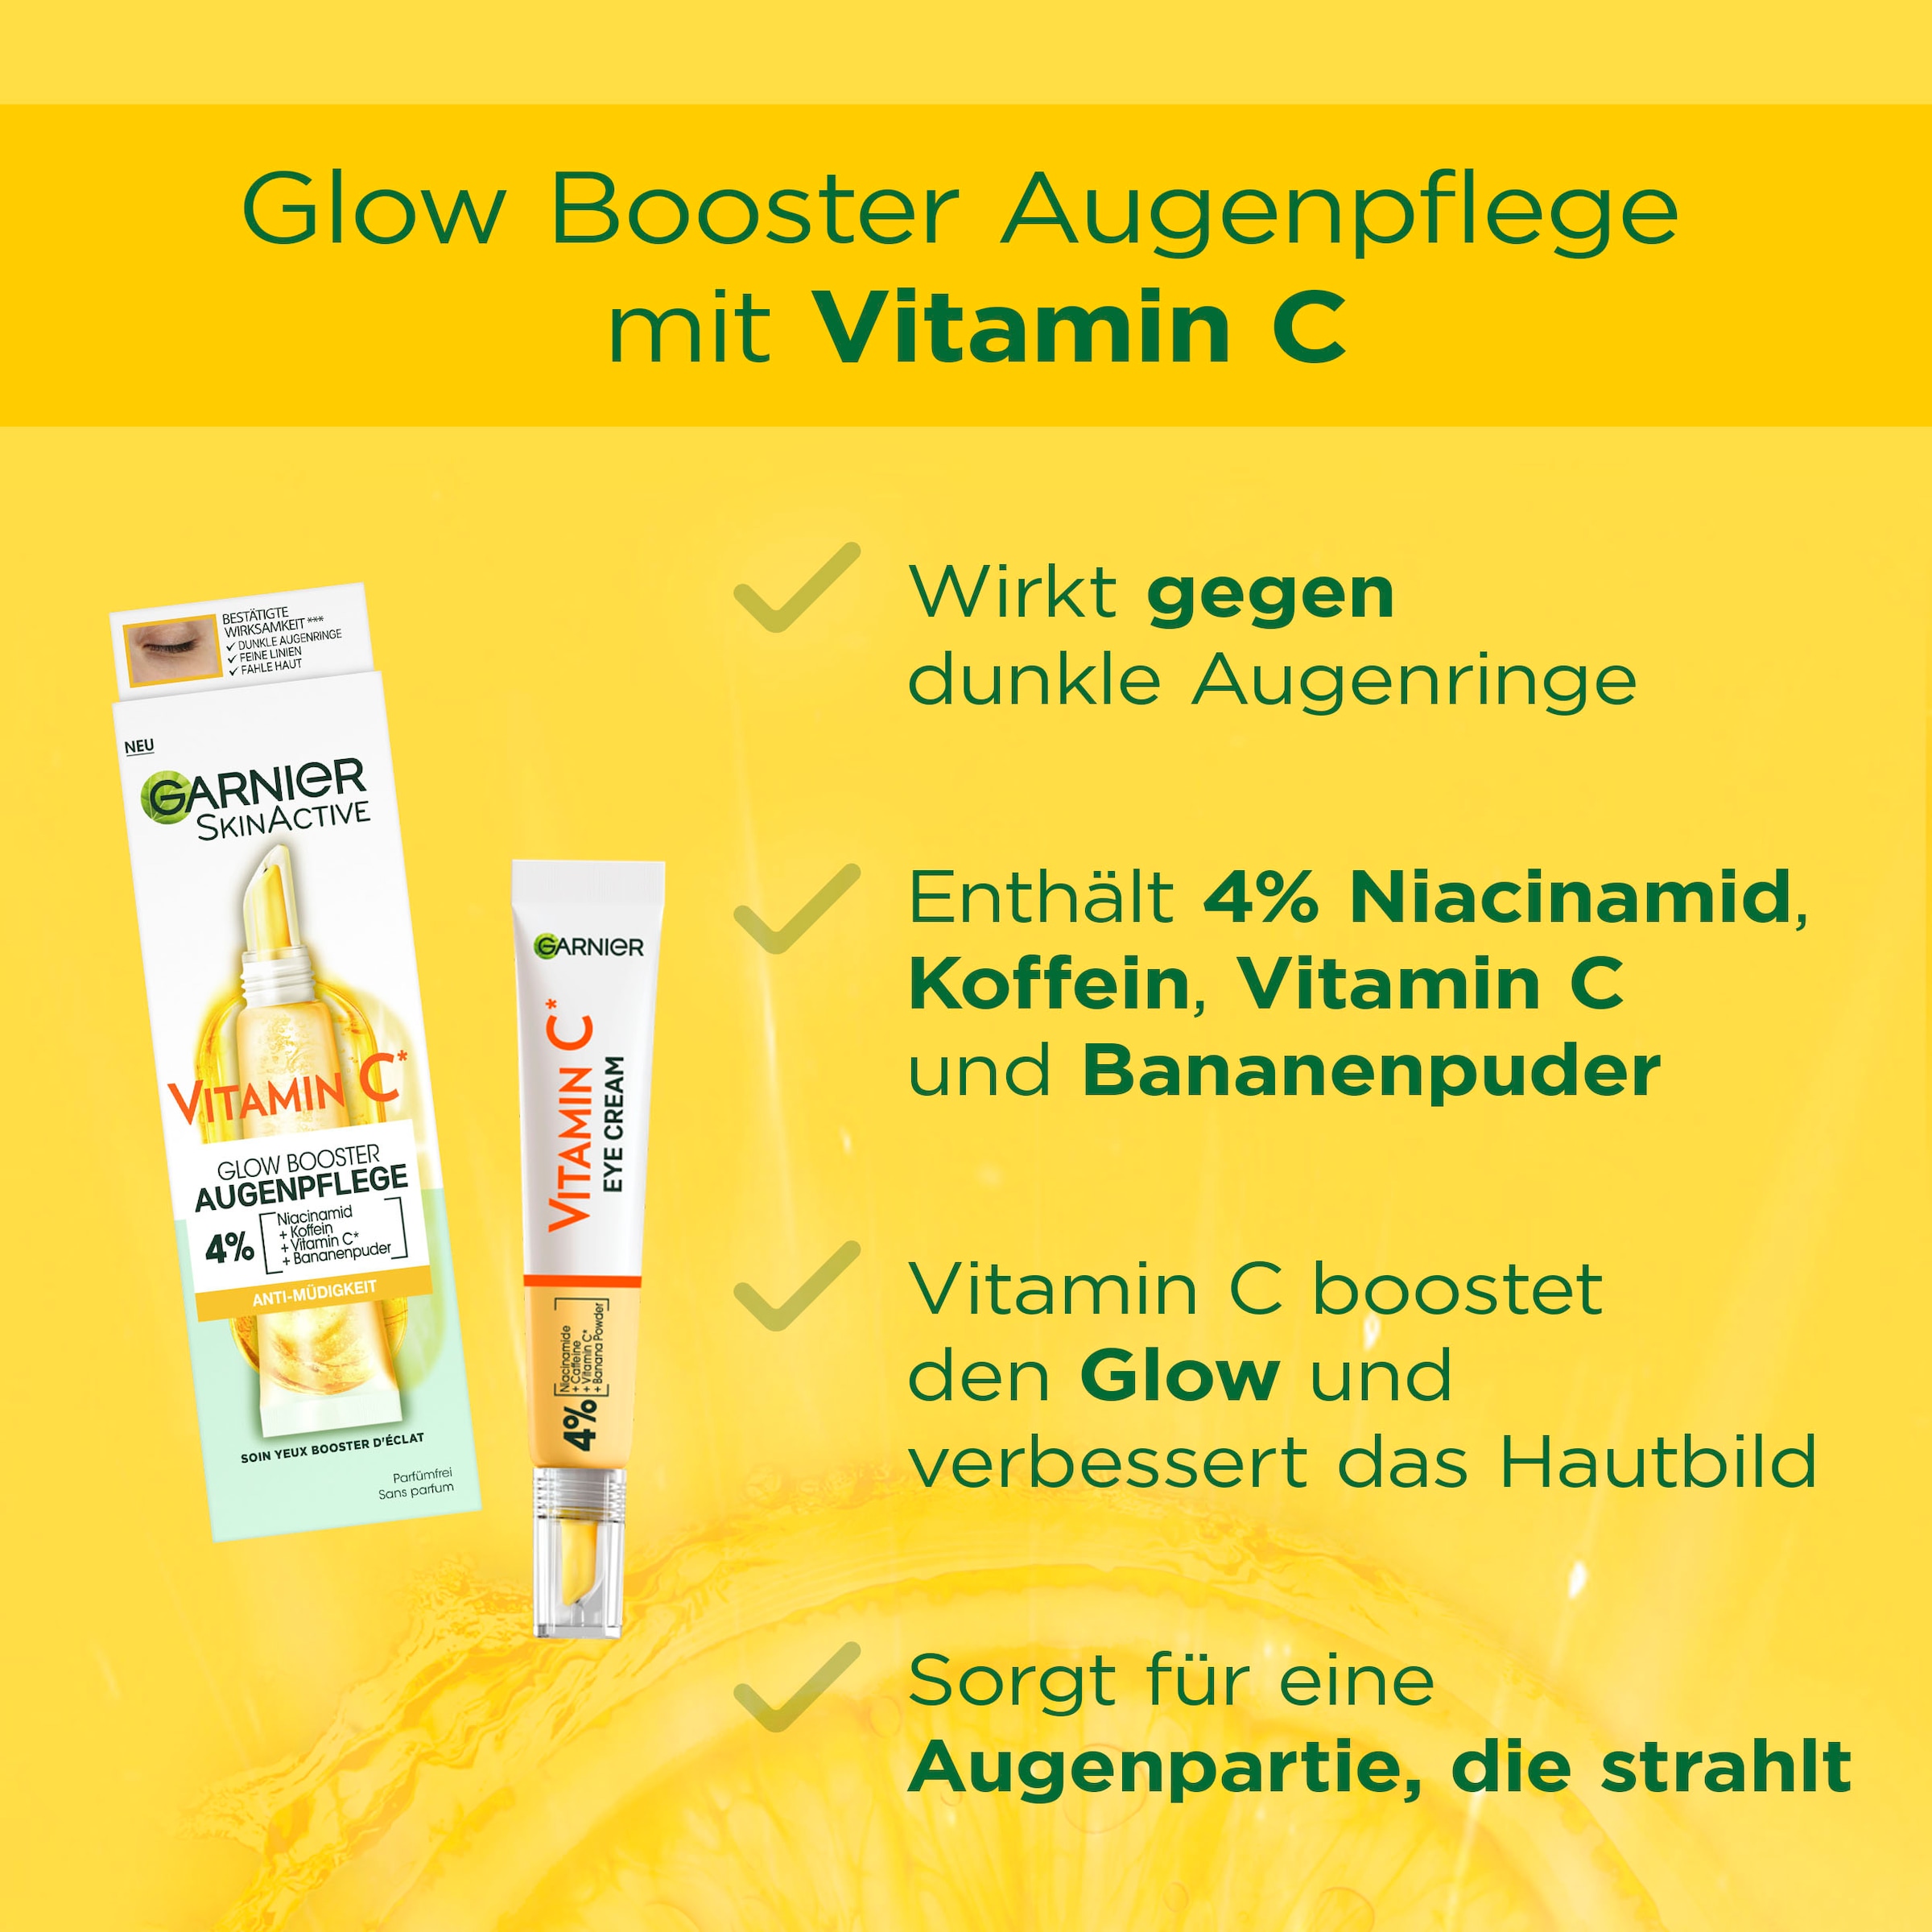 GARNIER Gesichtspflege-Set »Vitamin C Glow Booster Set«, (Set, 2 tlg.)